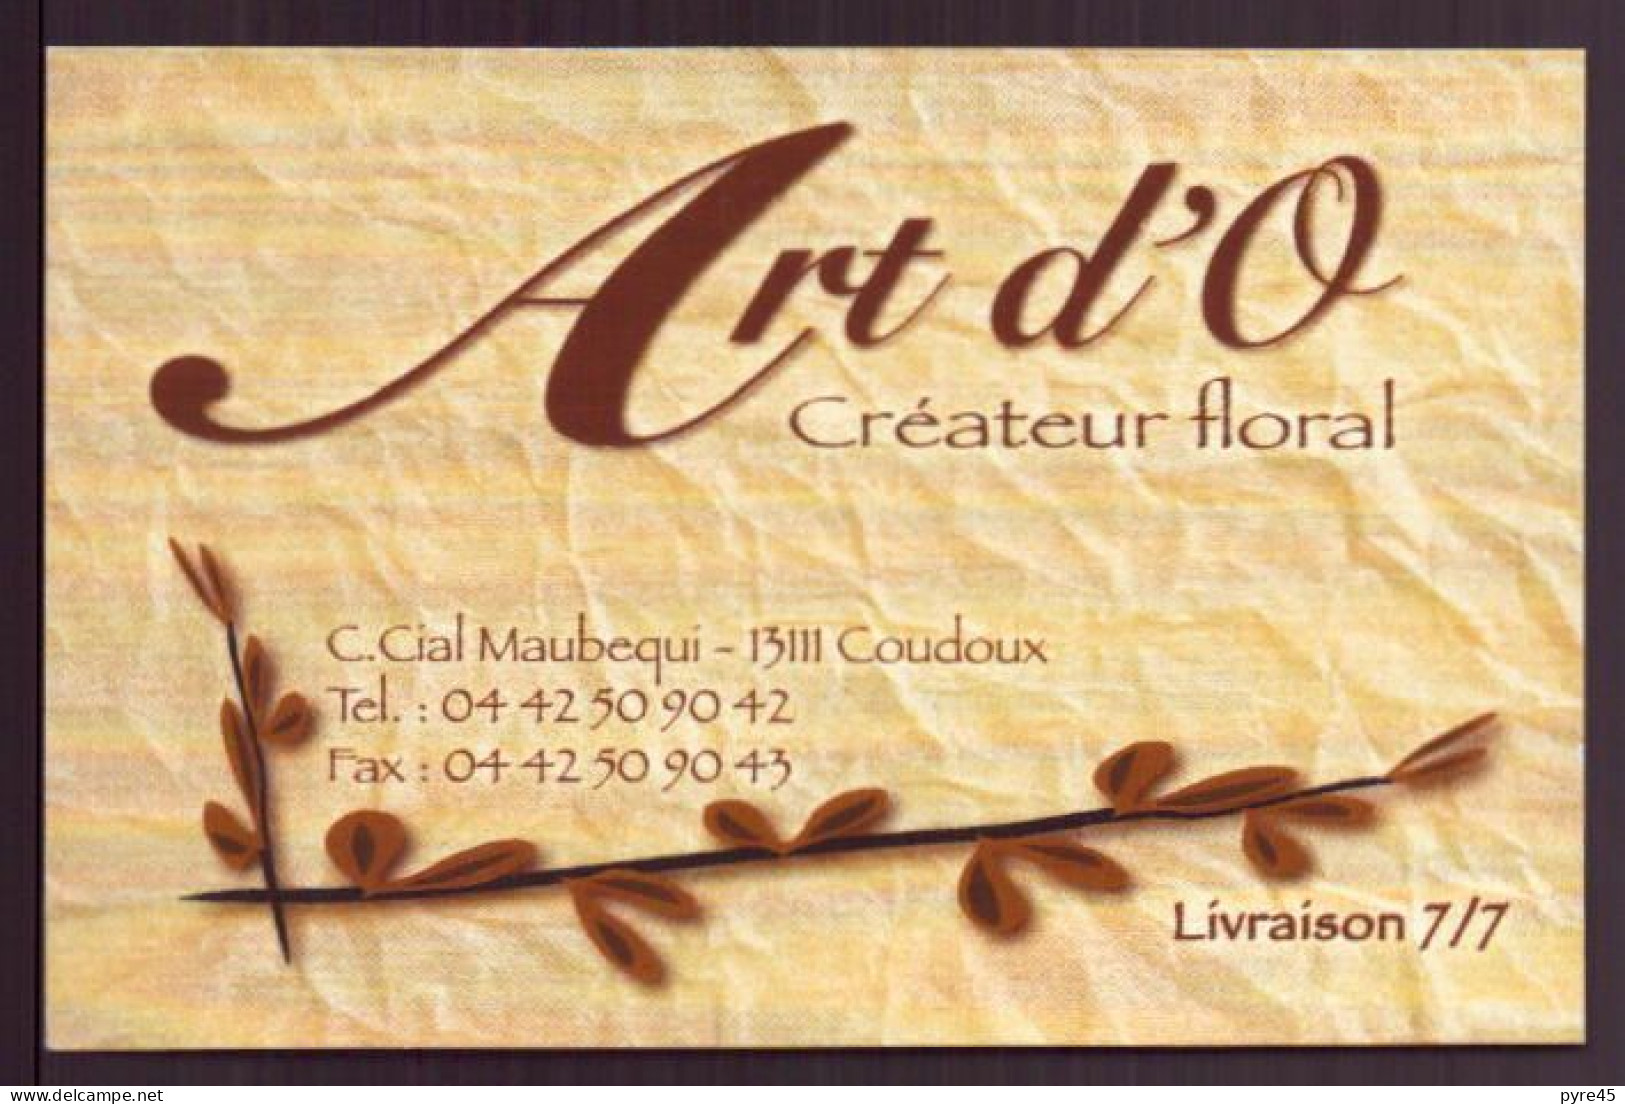 CARTE PUBLICITAIRE ART D O CREATEUR FLORAL A COUDOUX - Cartes De Visite